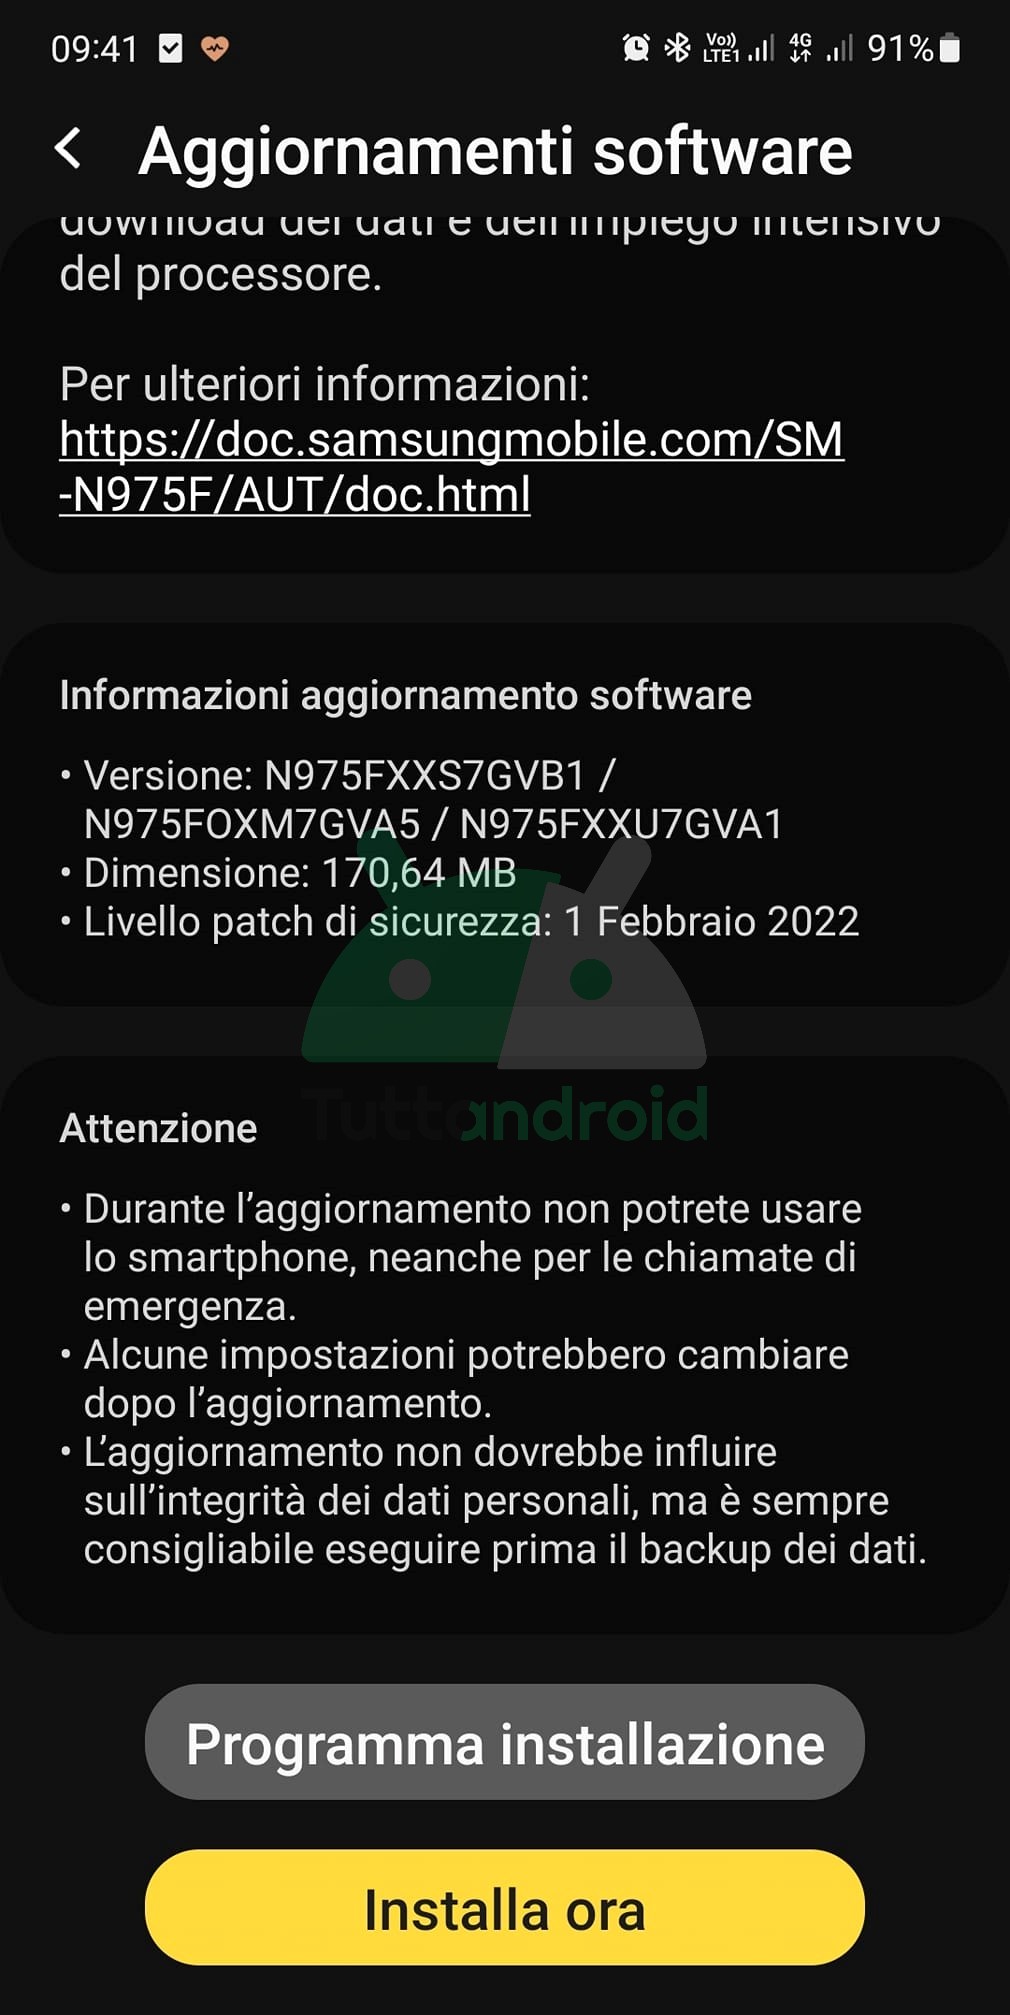 Samsung Galaxy Note 10+ aggiornamento patch di sicurezza febbraio 2022